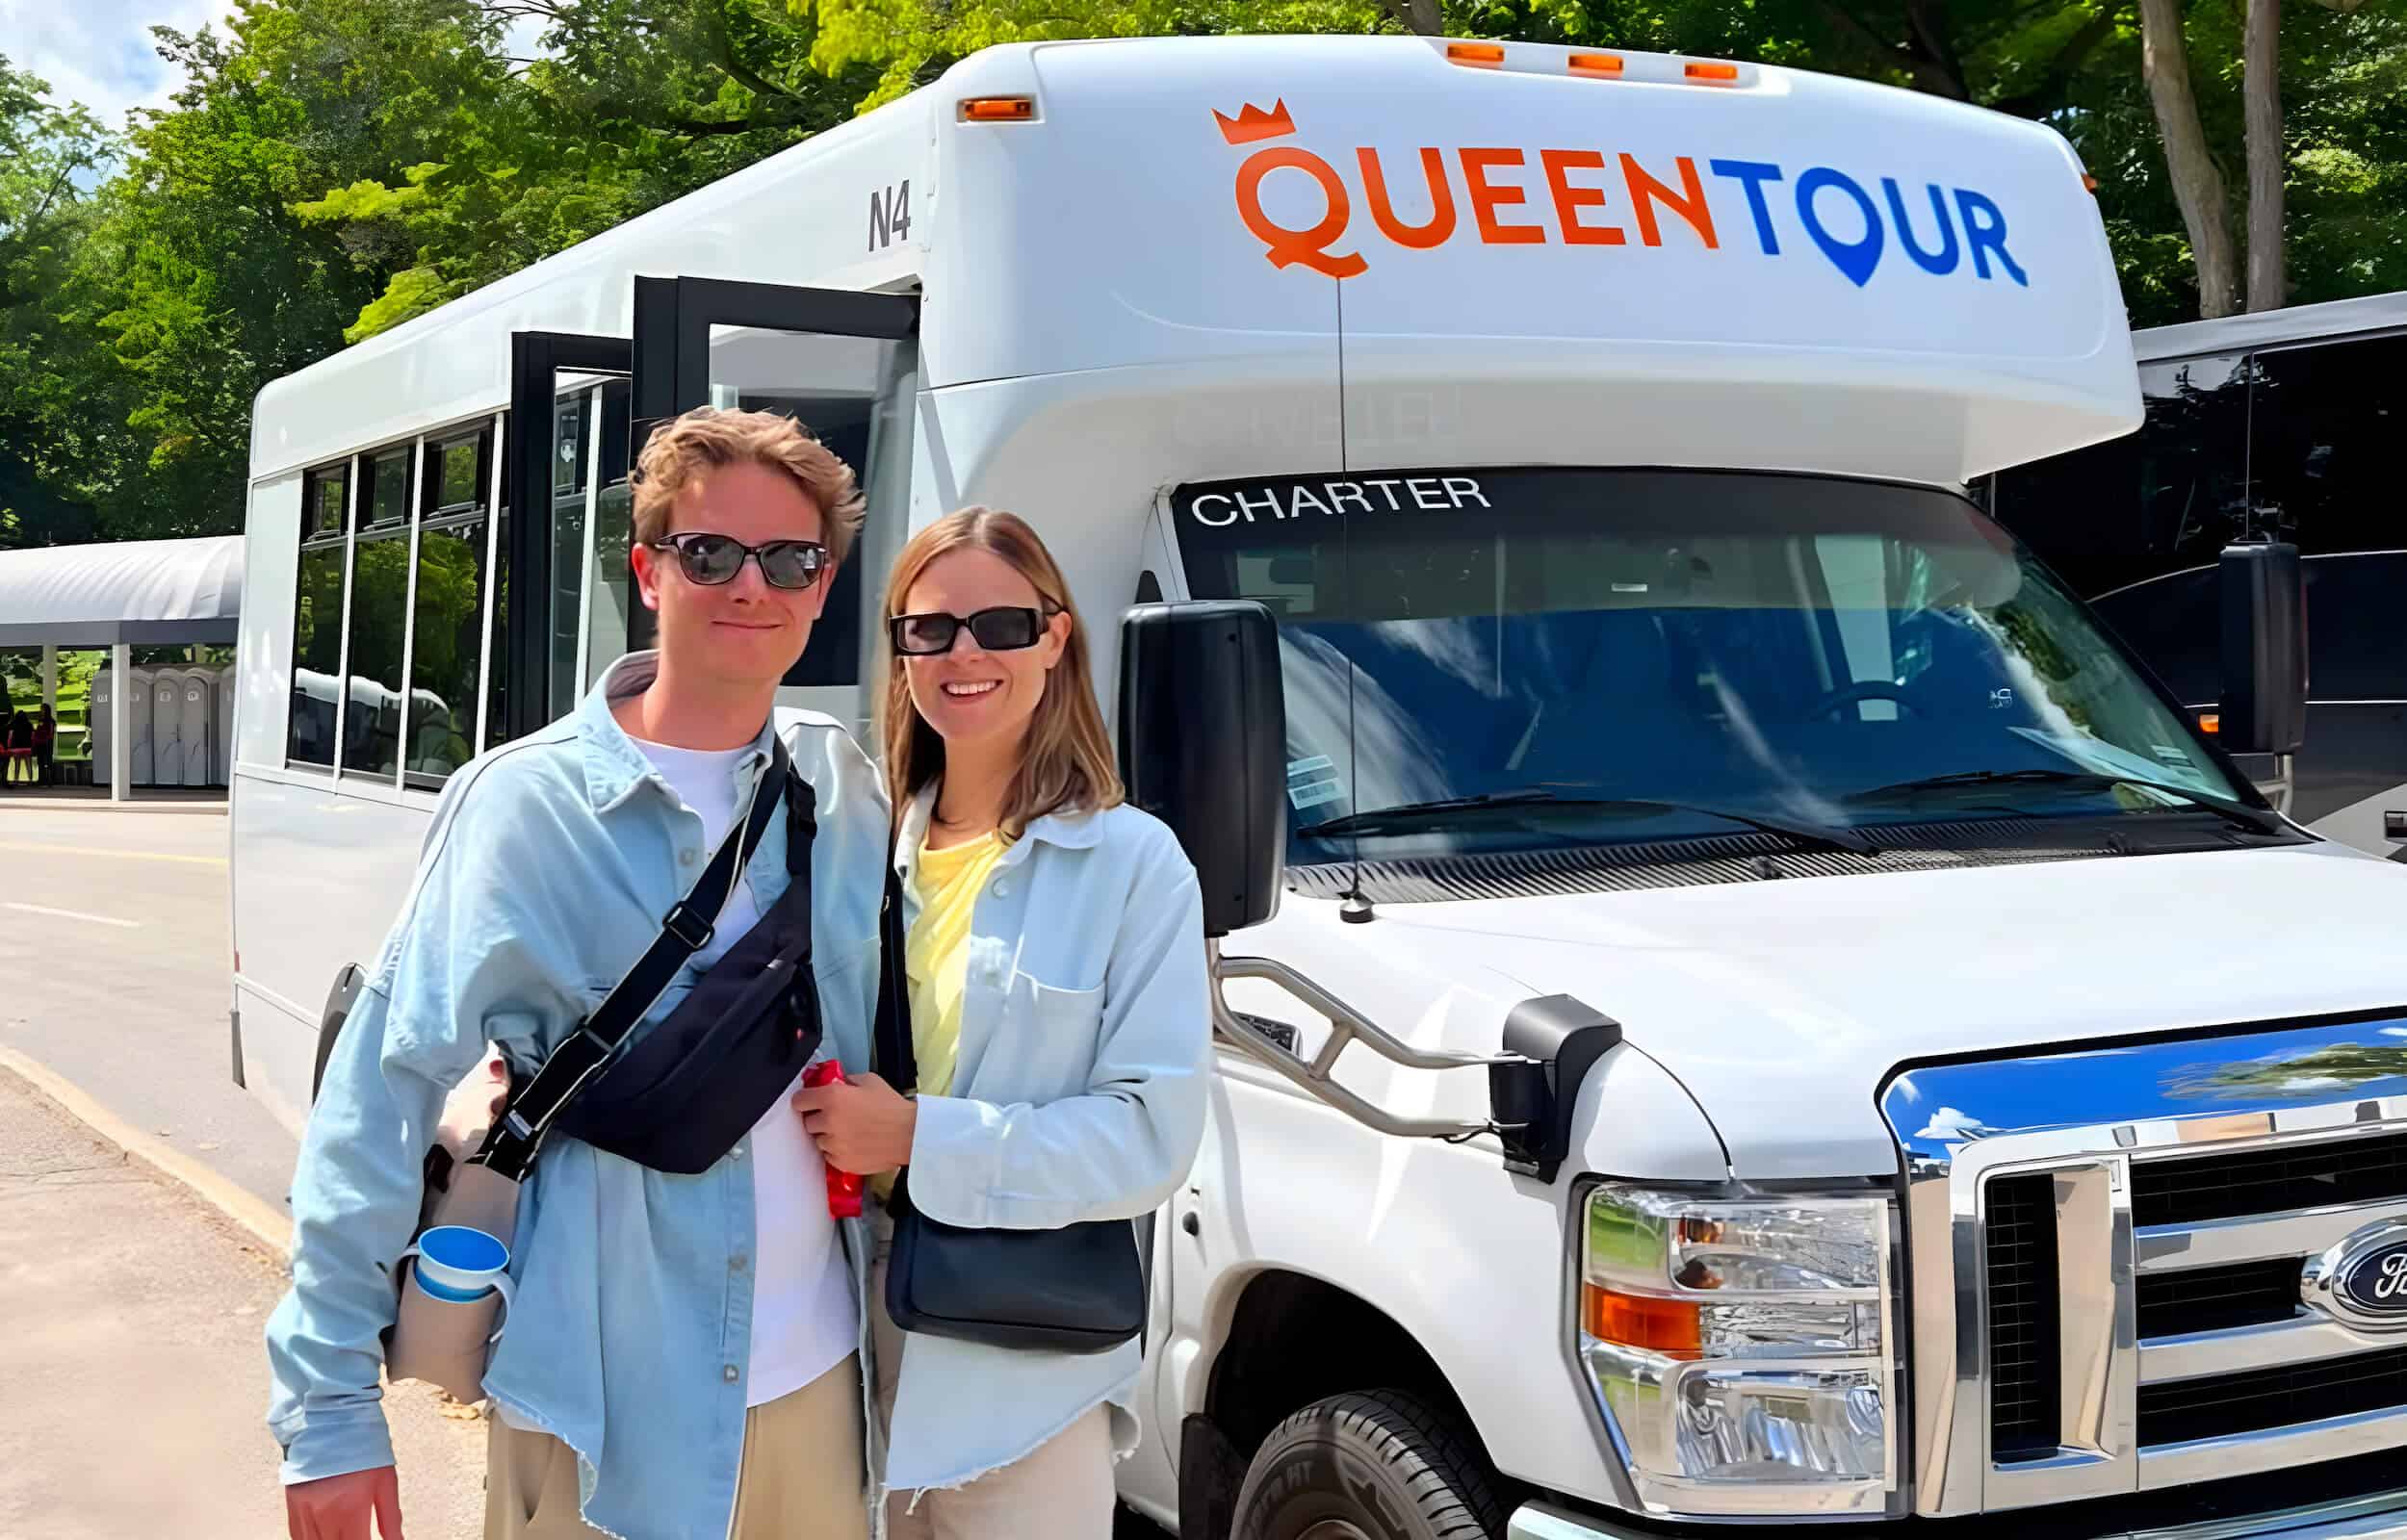 Queen Tour Niagara Falls Tour Bus